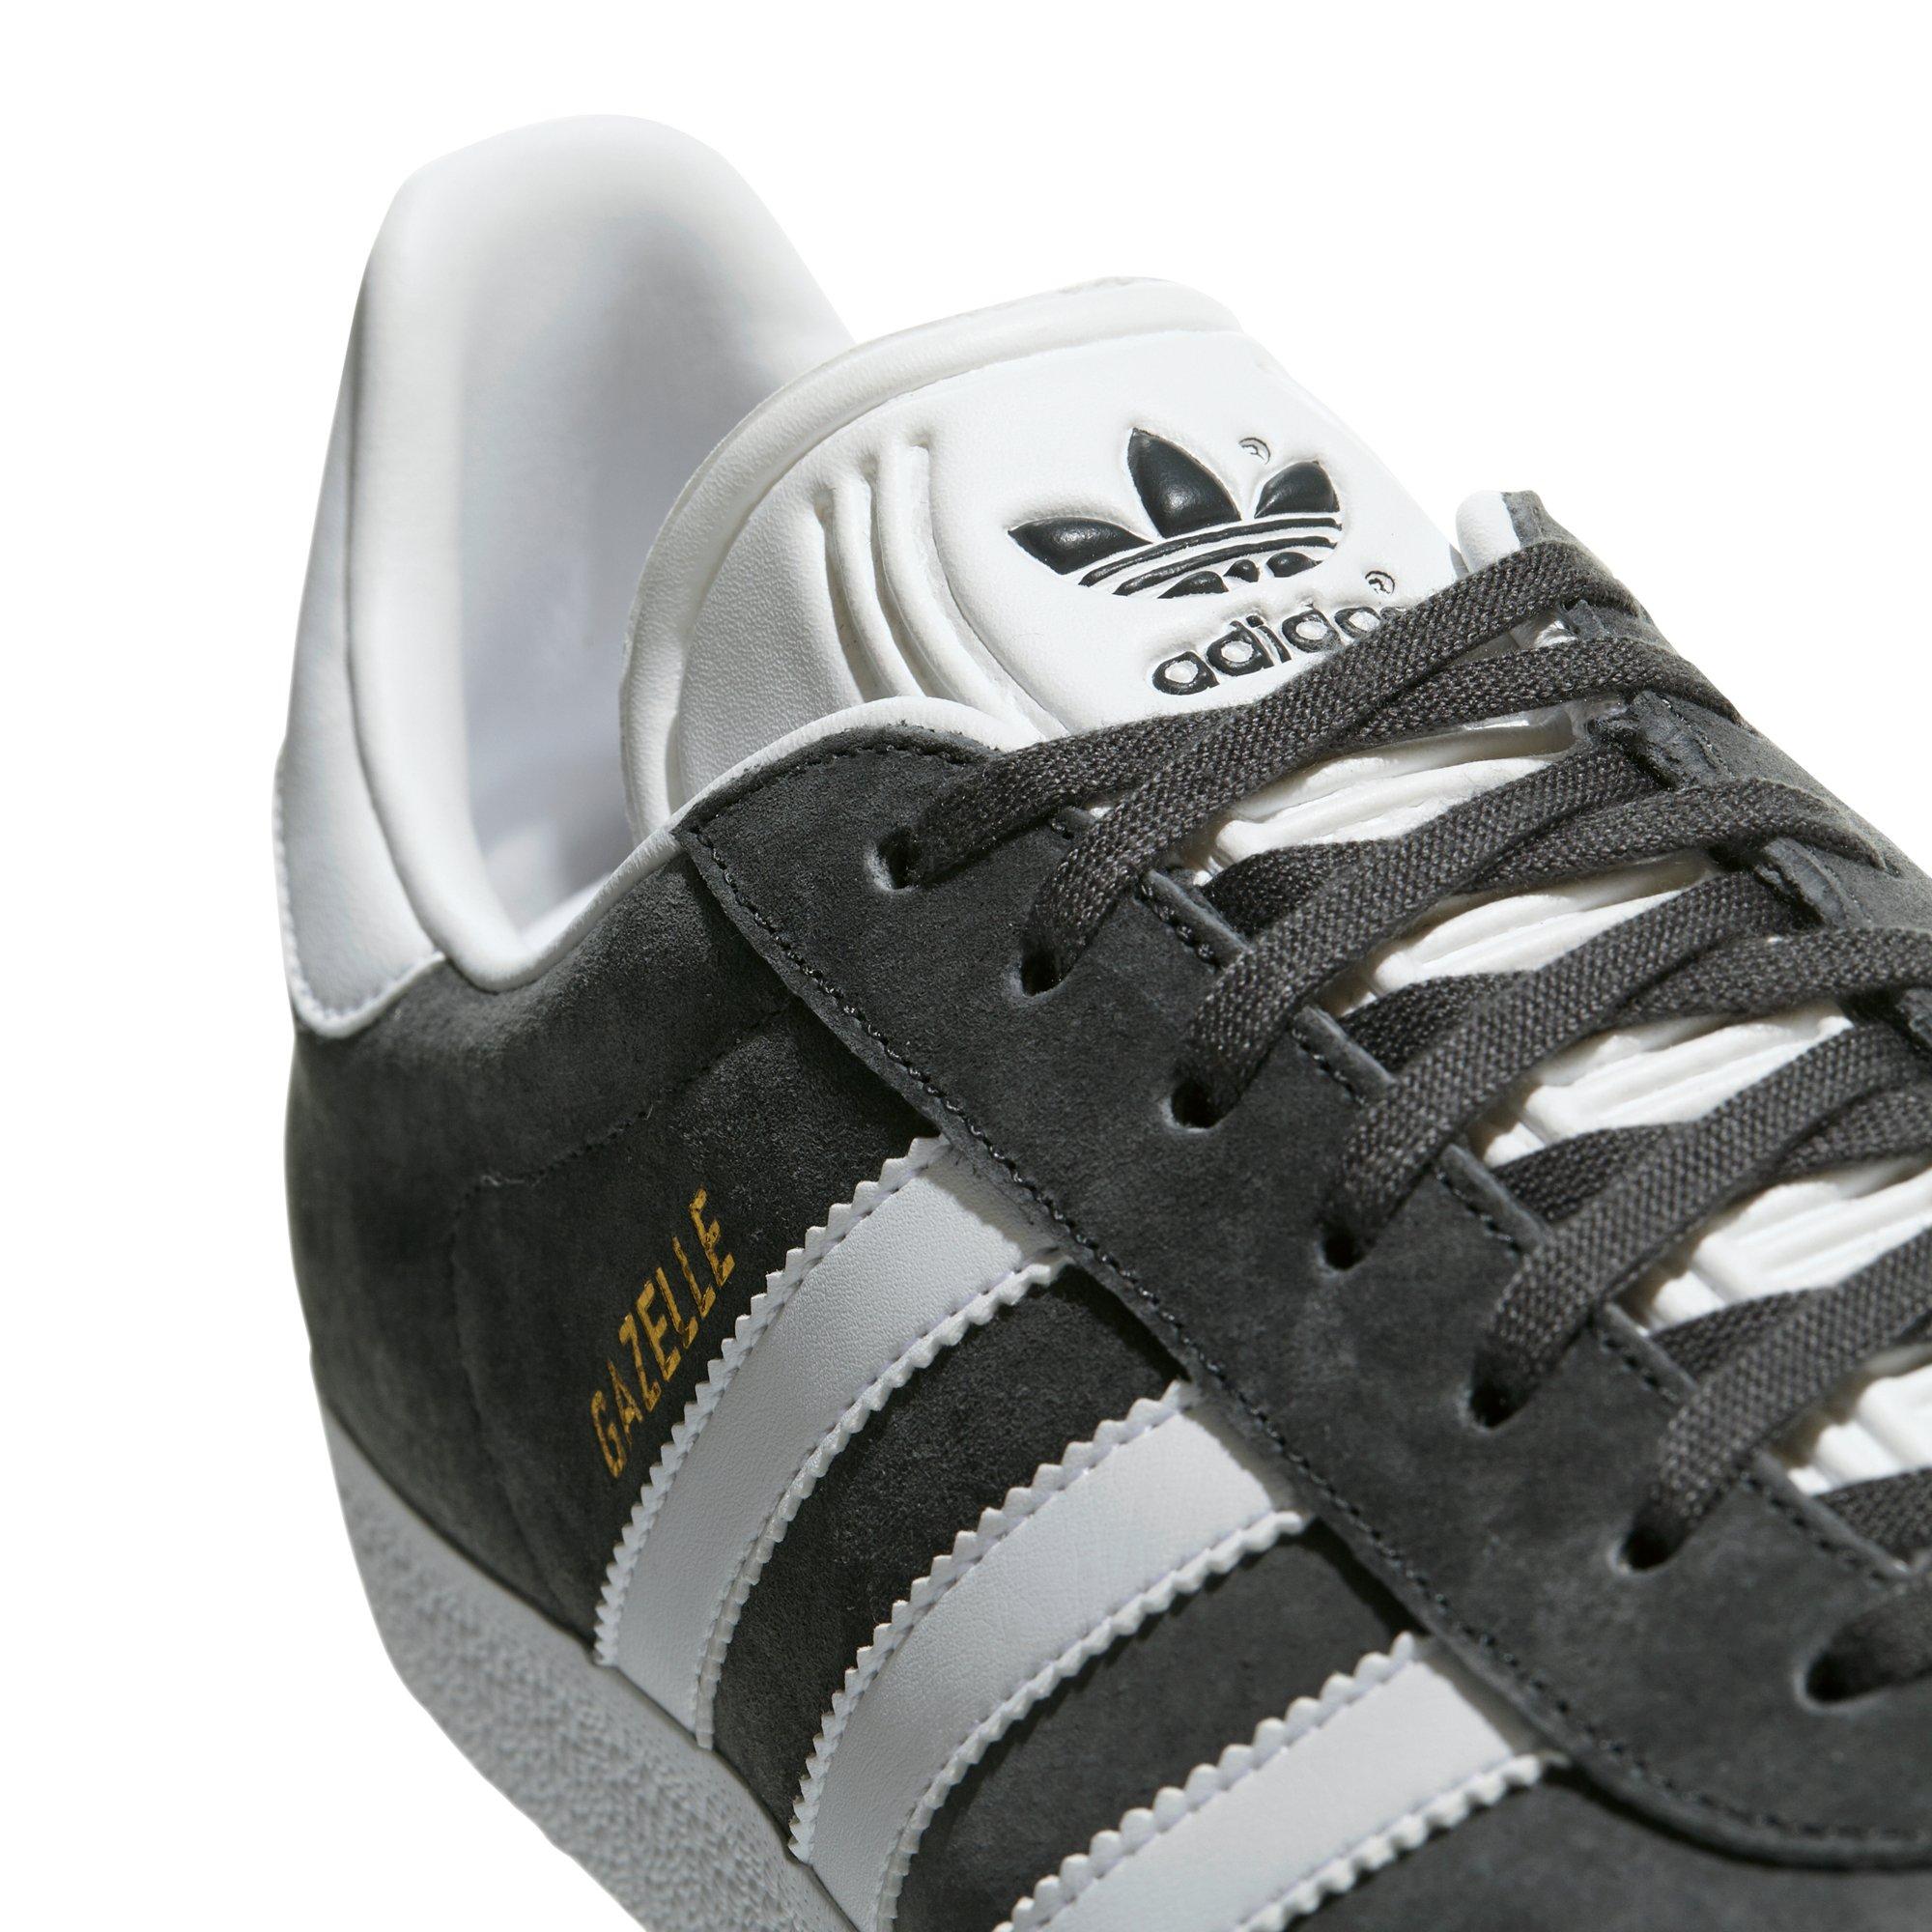 鍔 Ga naar beneden afgewerkt adidas Originals Gazelle "Dgh Solid Grey/ White/Gold Metallic" Men's Shoe